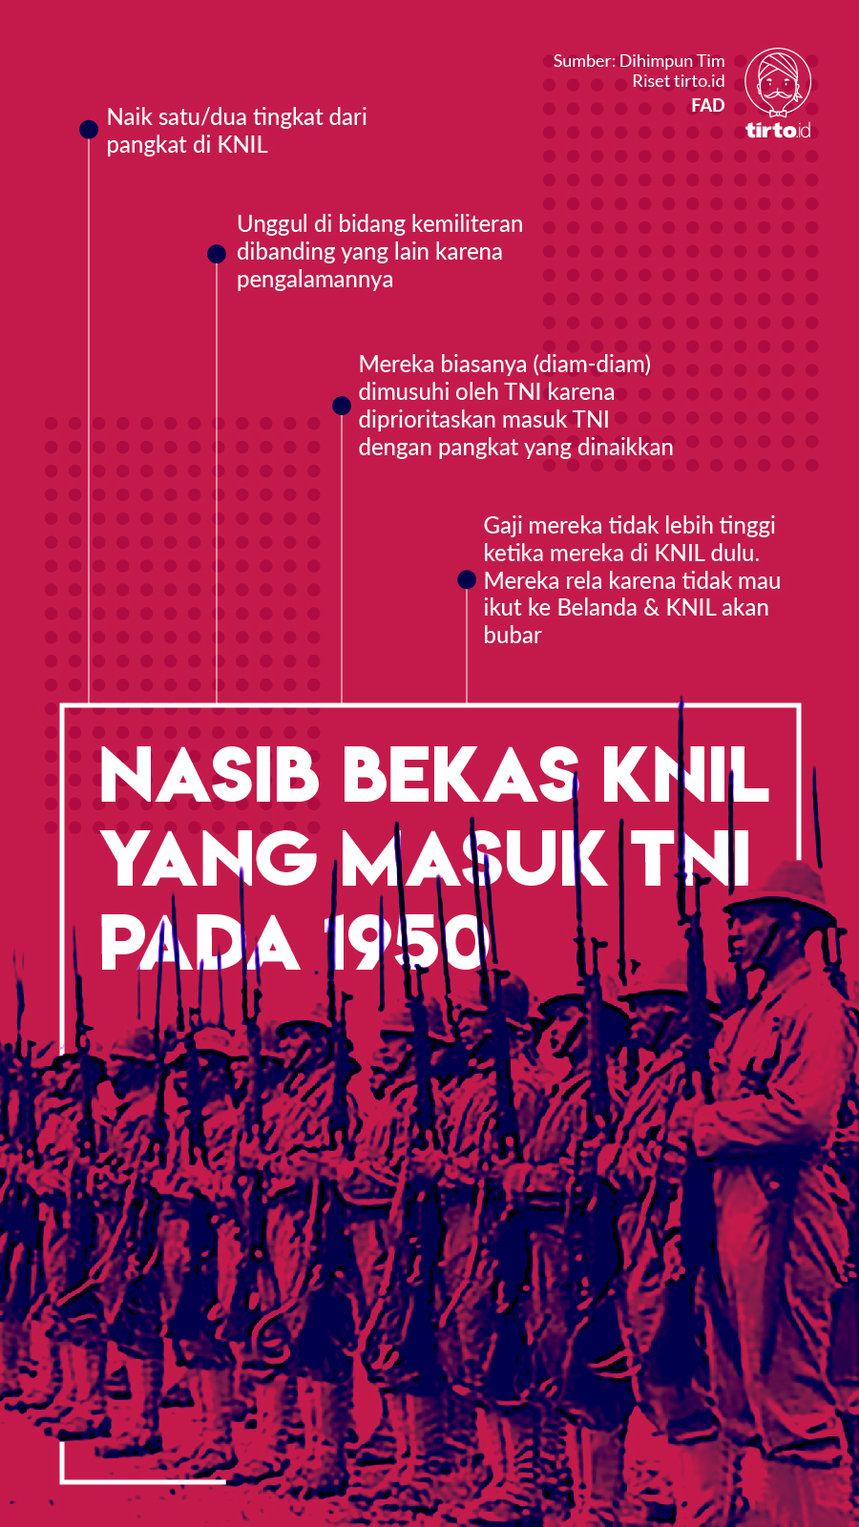 Infografik nasib bekas KNIL yang masuk TNI pada 1950